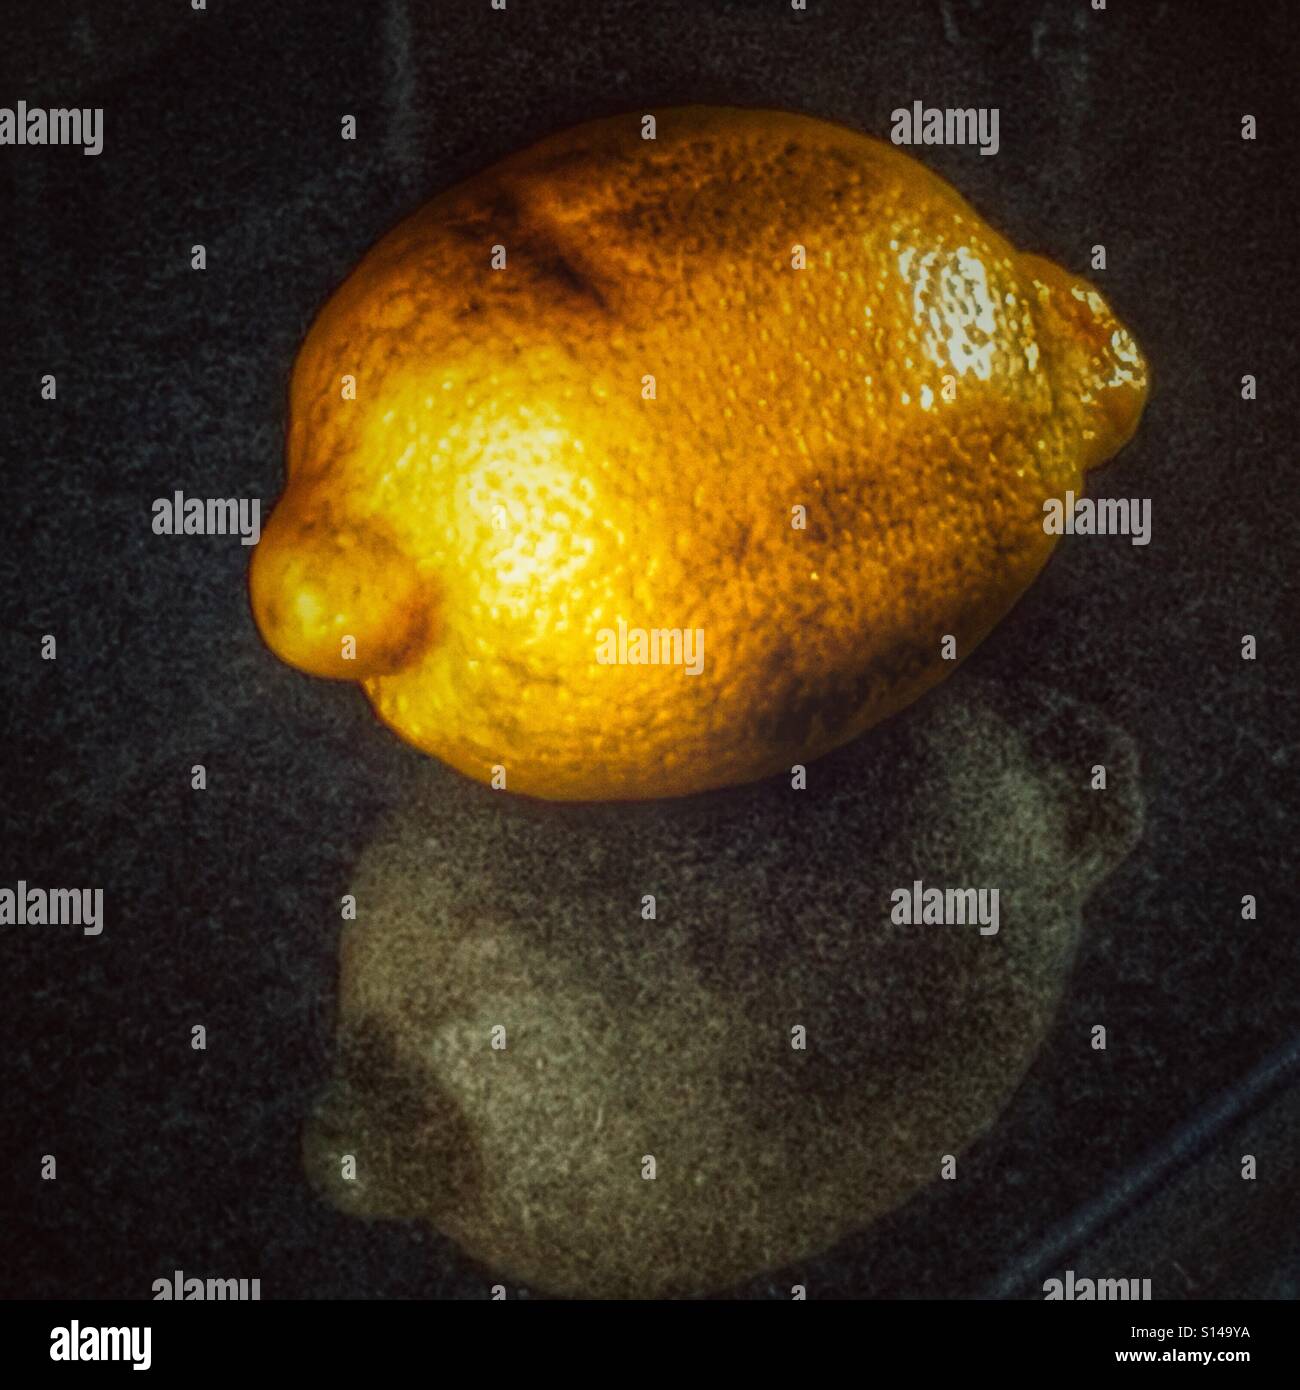 Grattugia al limone immagini e fotografie stock ad alta risoluzione - Alamy